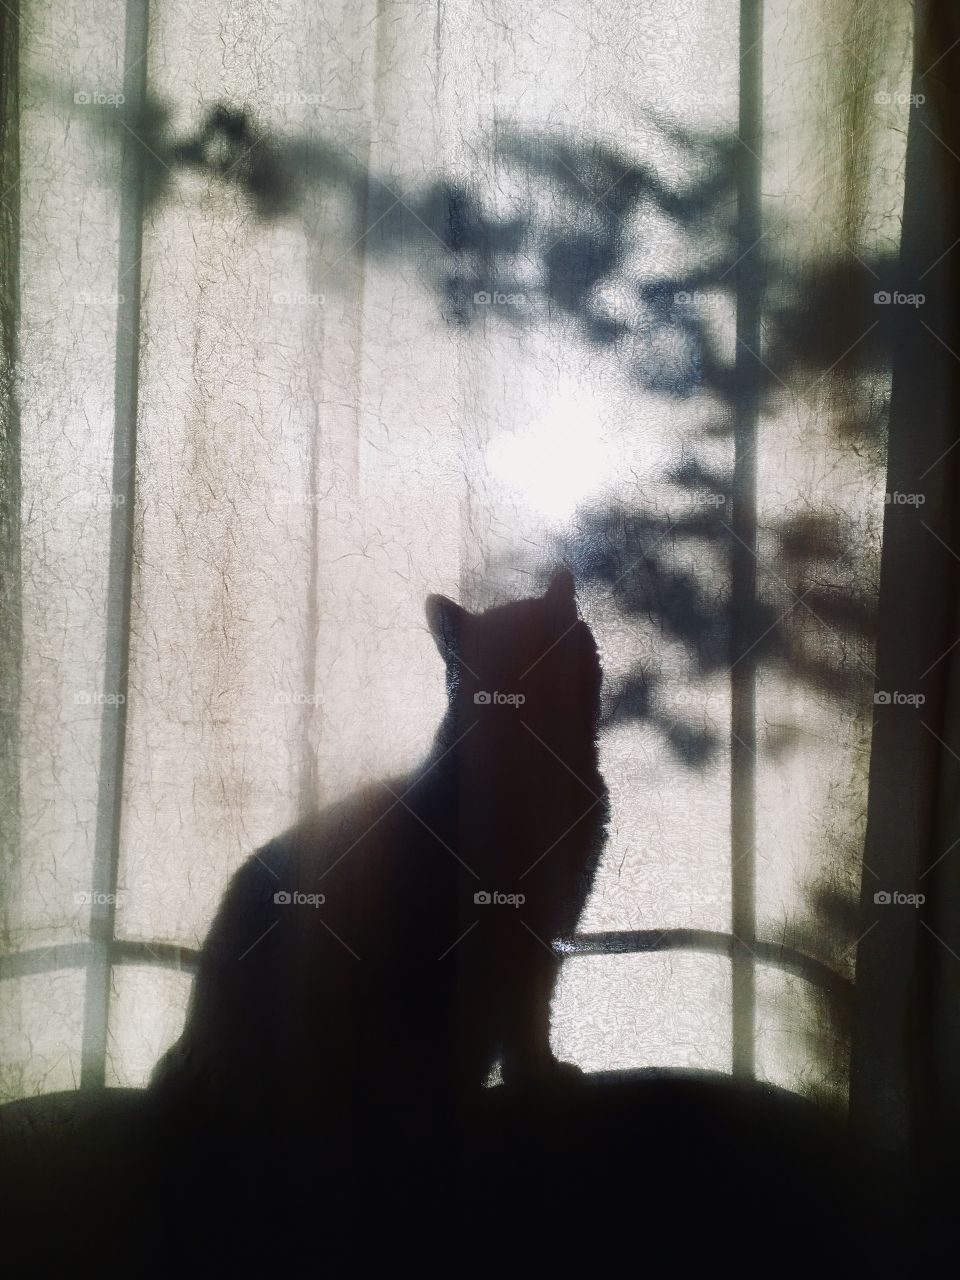 Shadow cat in window